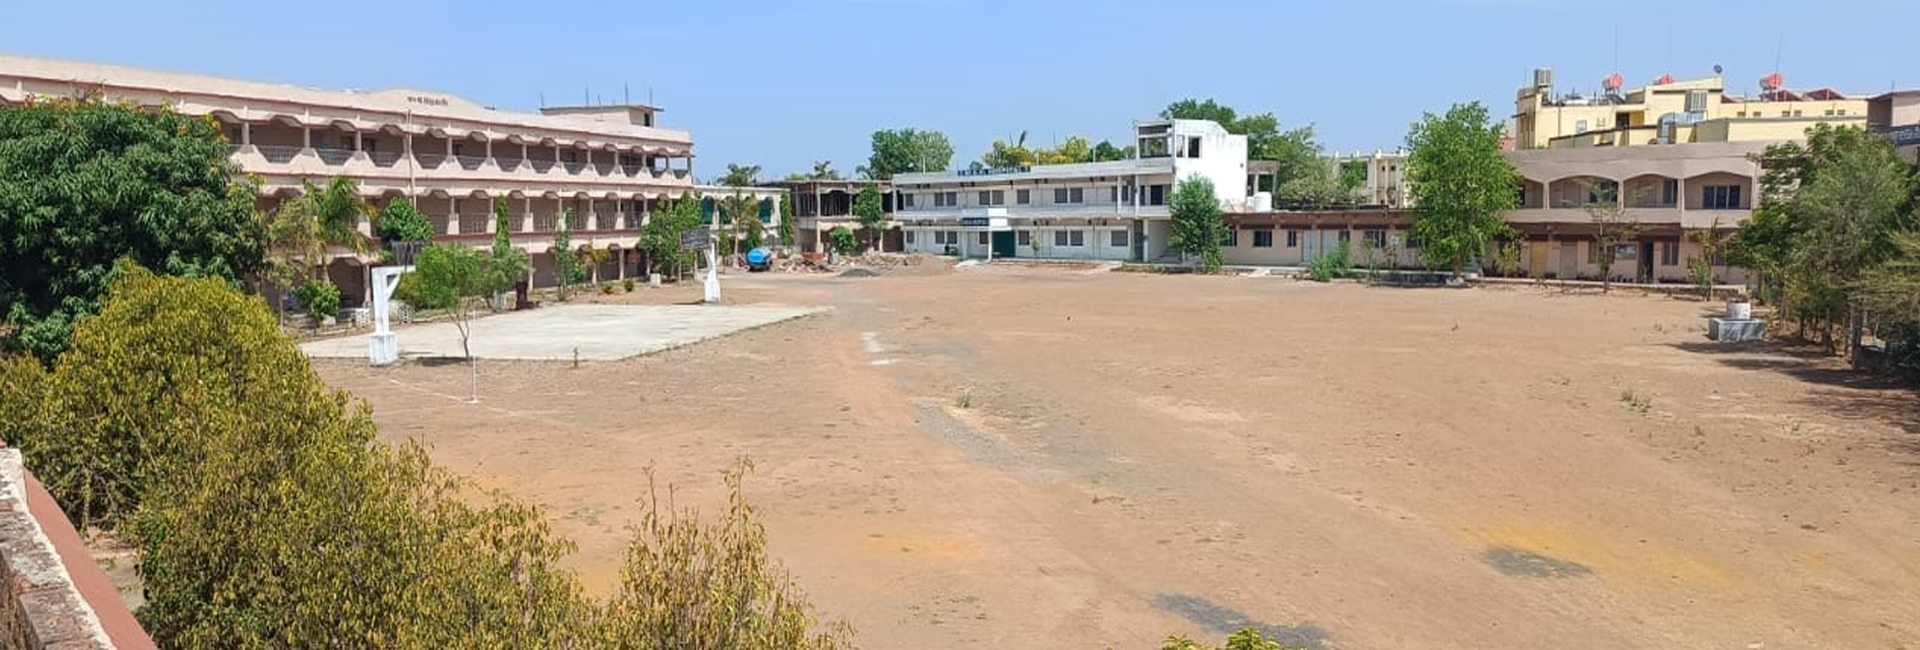 Mahatma Gandhi Institute of Nursing Jabalpur M.P. Infrastructure